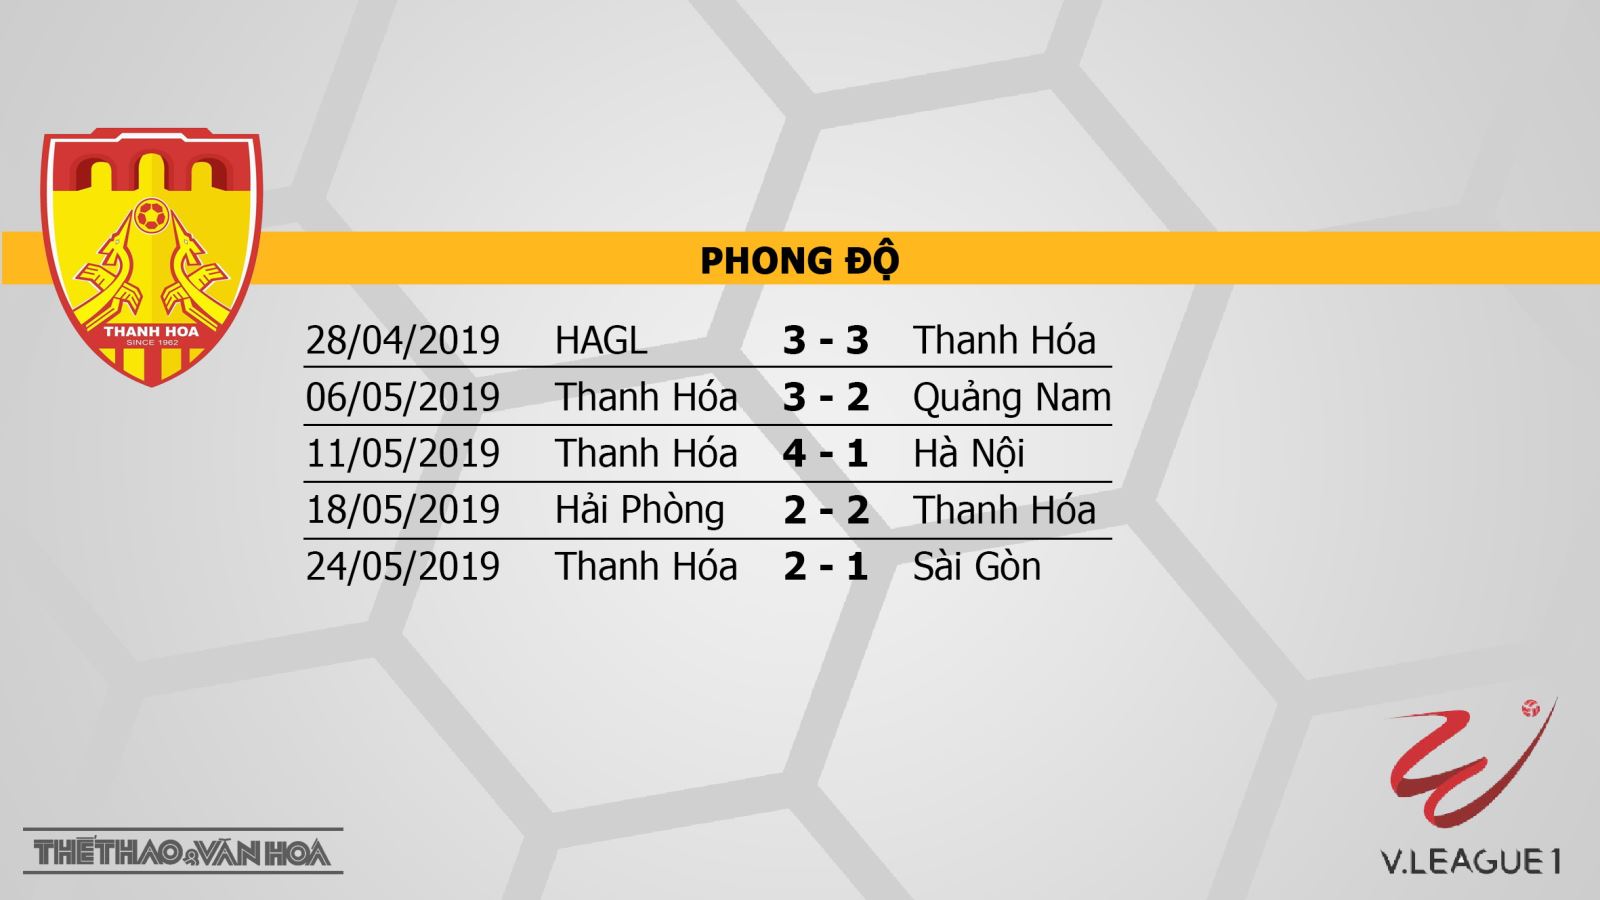 Thanh Hóa vs Nam Định, trực tiếp Thanh Hóa vs Nam Định, trực tiếp bóng đá, nhận định Thanh Hóa vs Nam Định, V-League 2019, Thanh Hóa, Nam Định